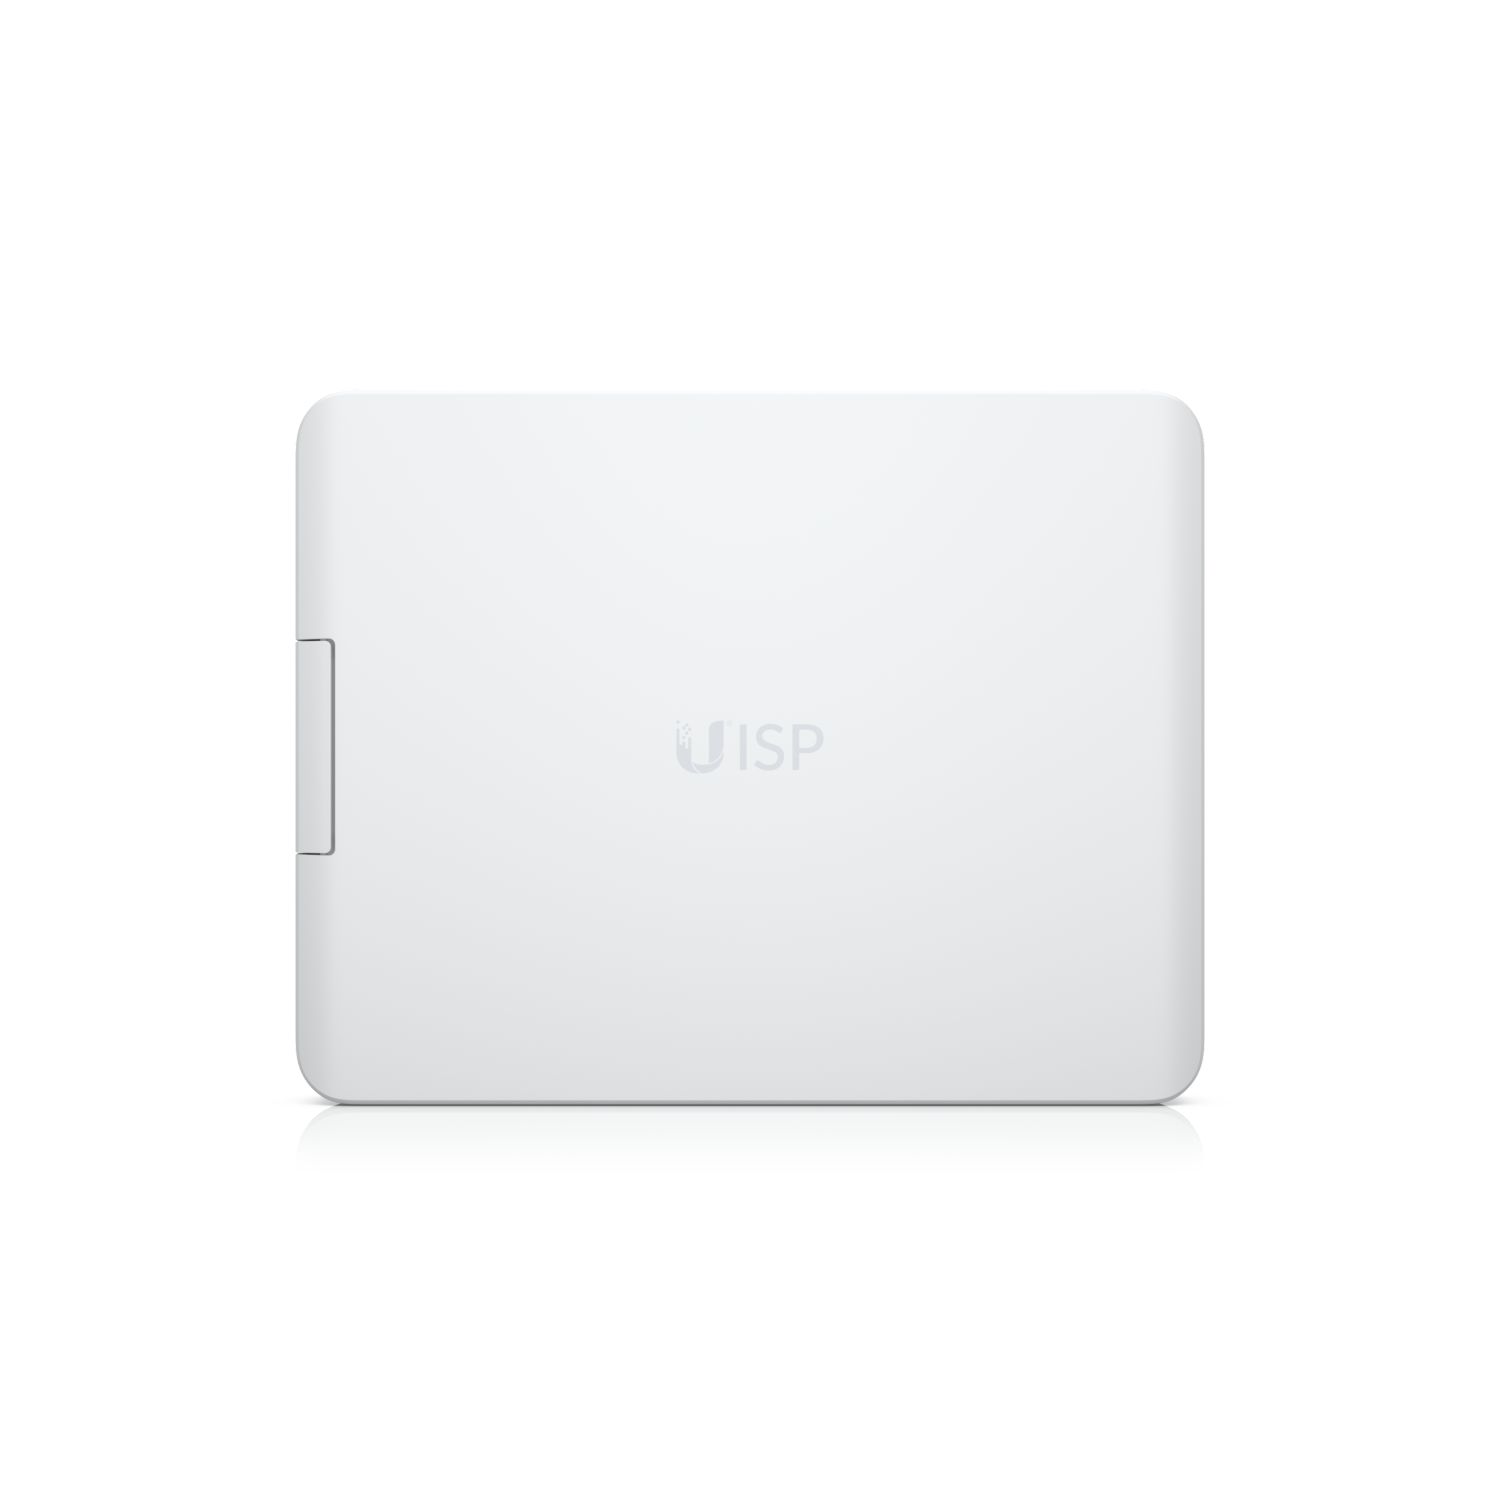 Фото #1 Ubiquiti UISP Box